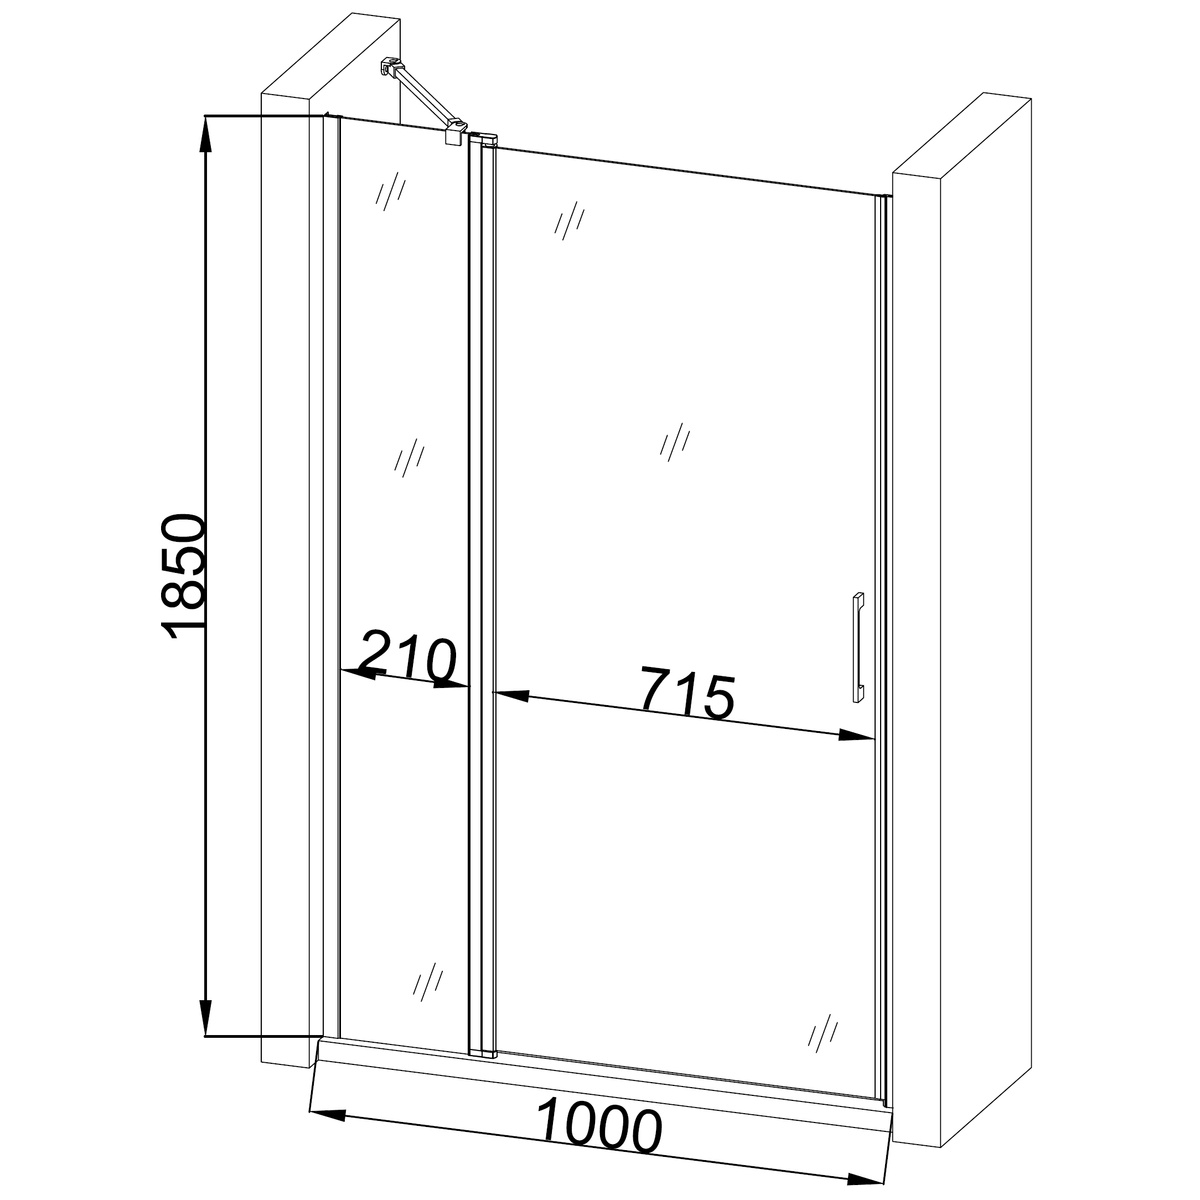 Дверь для душевой ниши BRAVO PASLENKA стеклянная универсальная распашная двухсекционная 185x100см прозрачная 6мм профиль хром 000019809